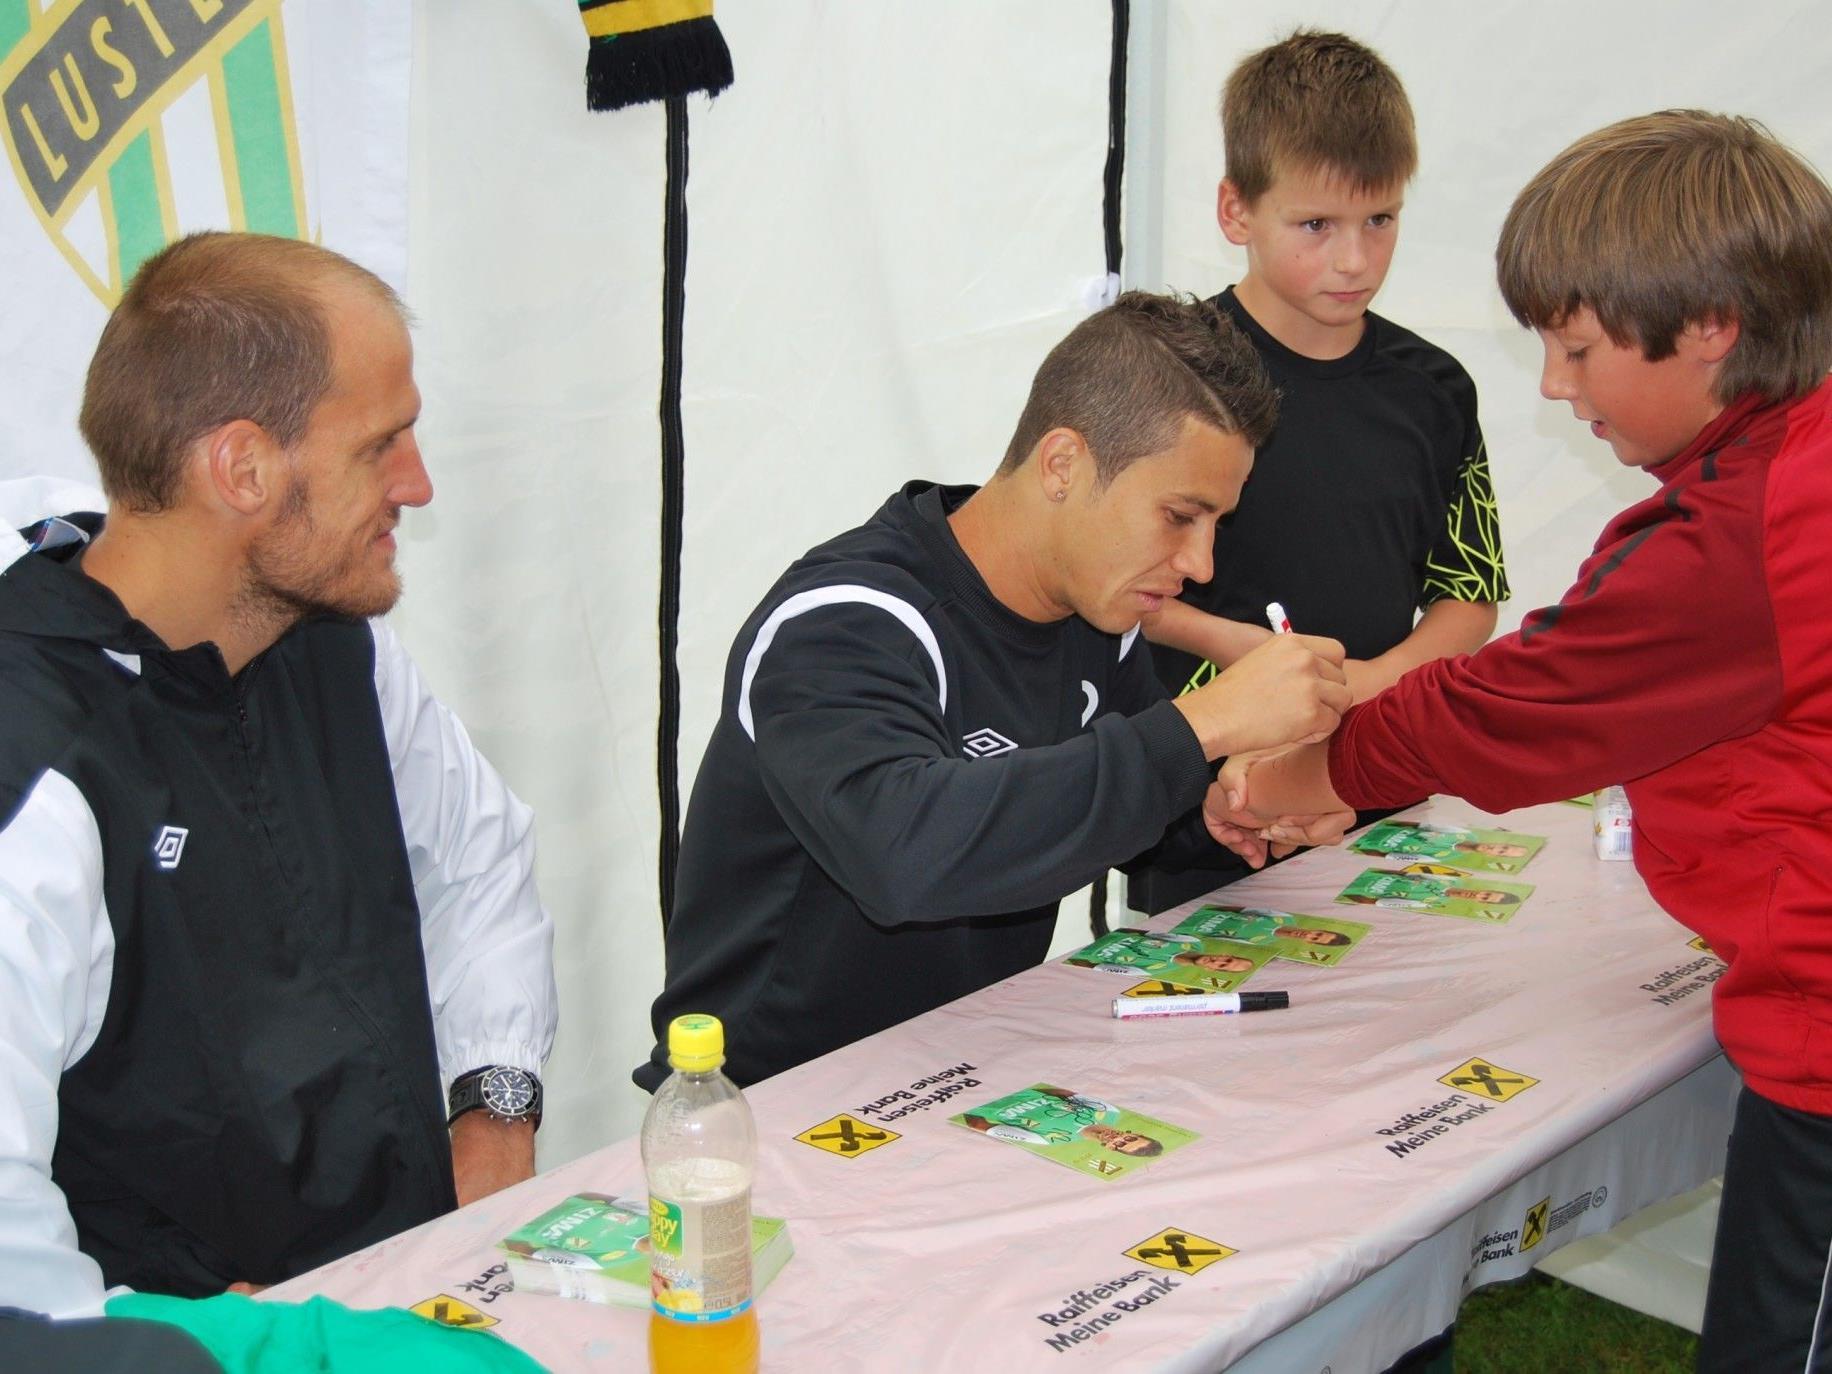 Thiago de Lima und Jürgen Patocka mussten viele Autogrammkarten schreiben.